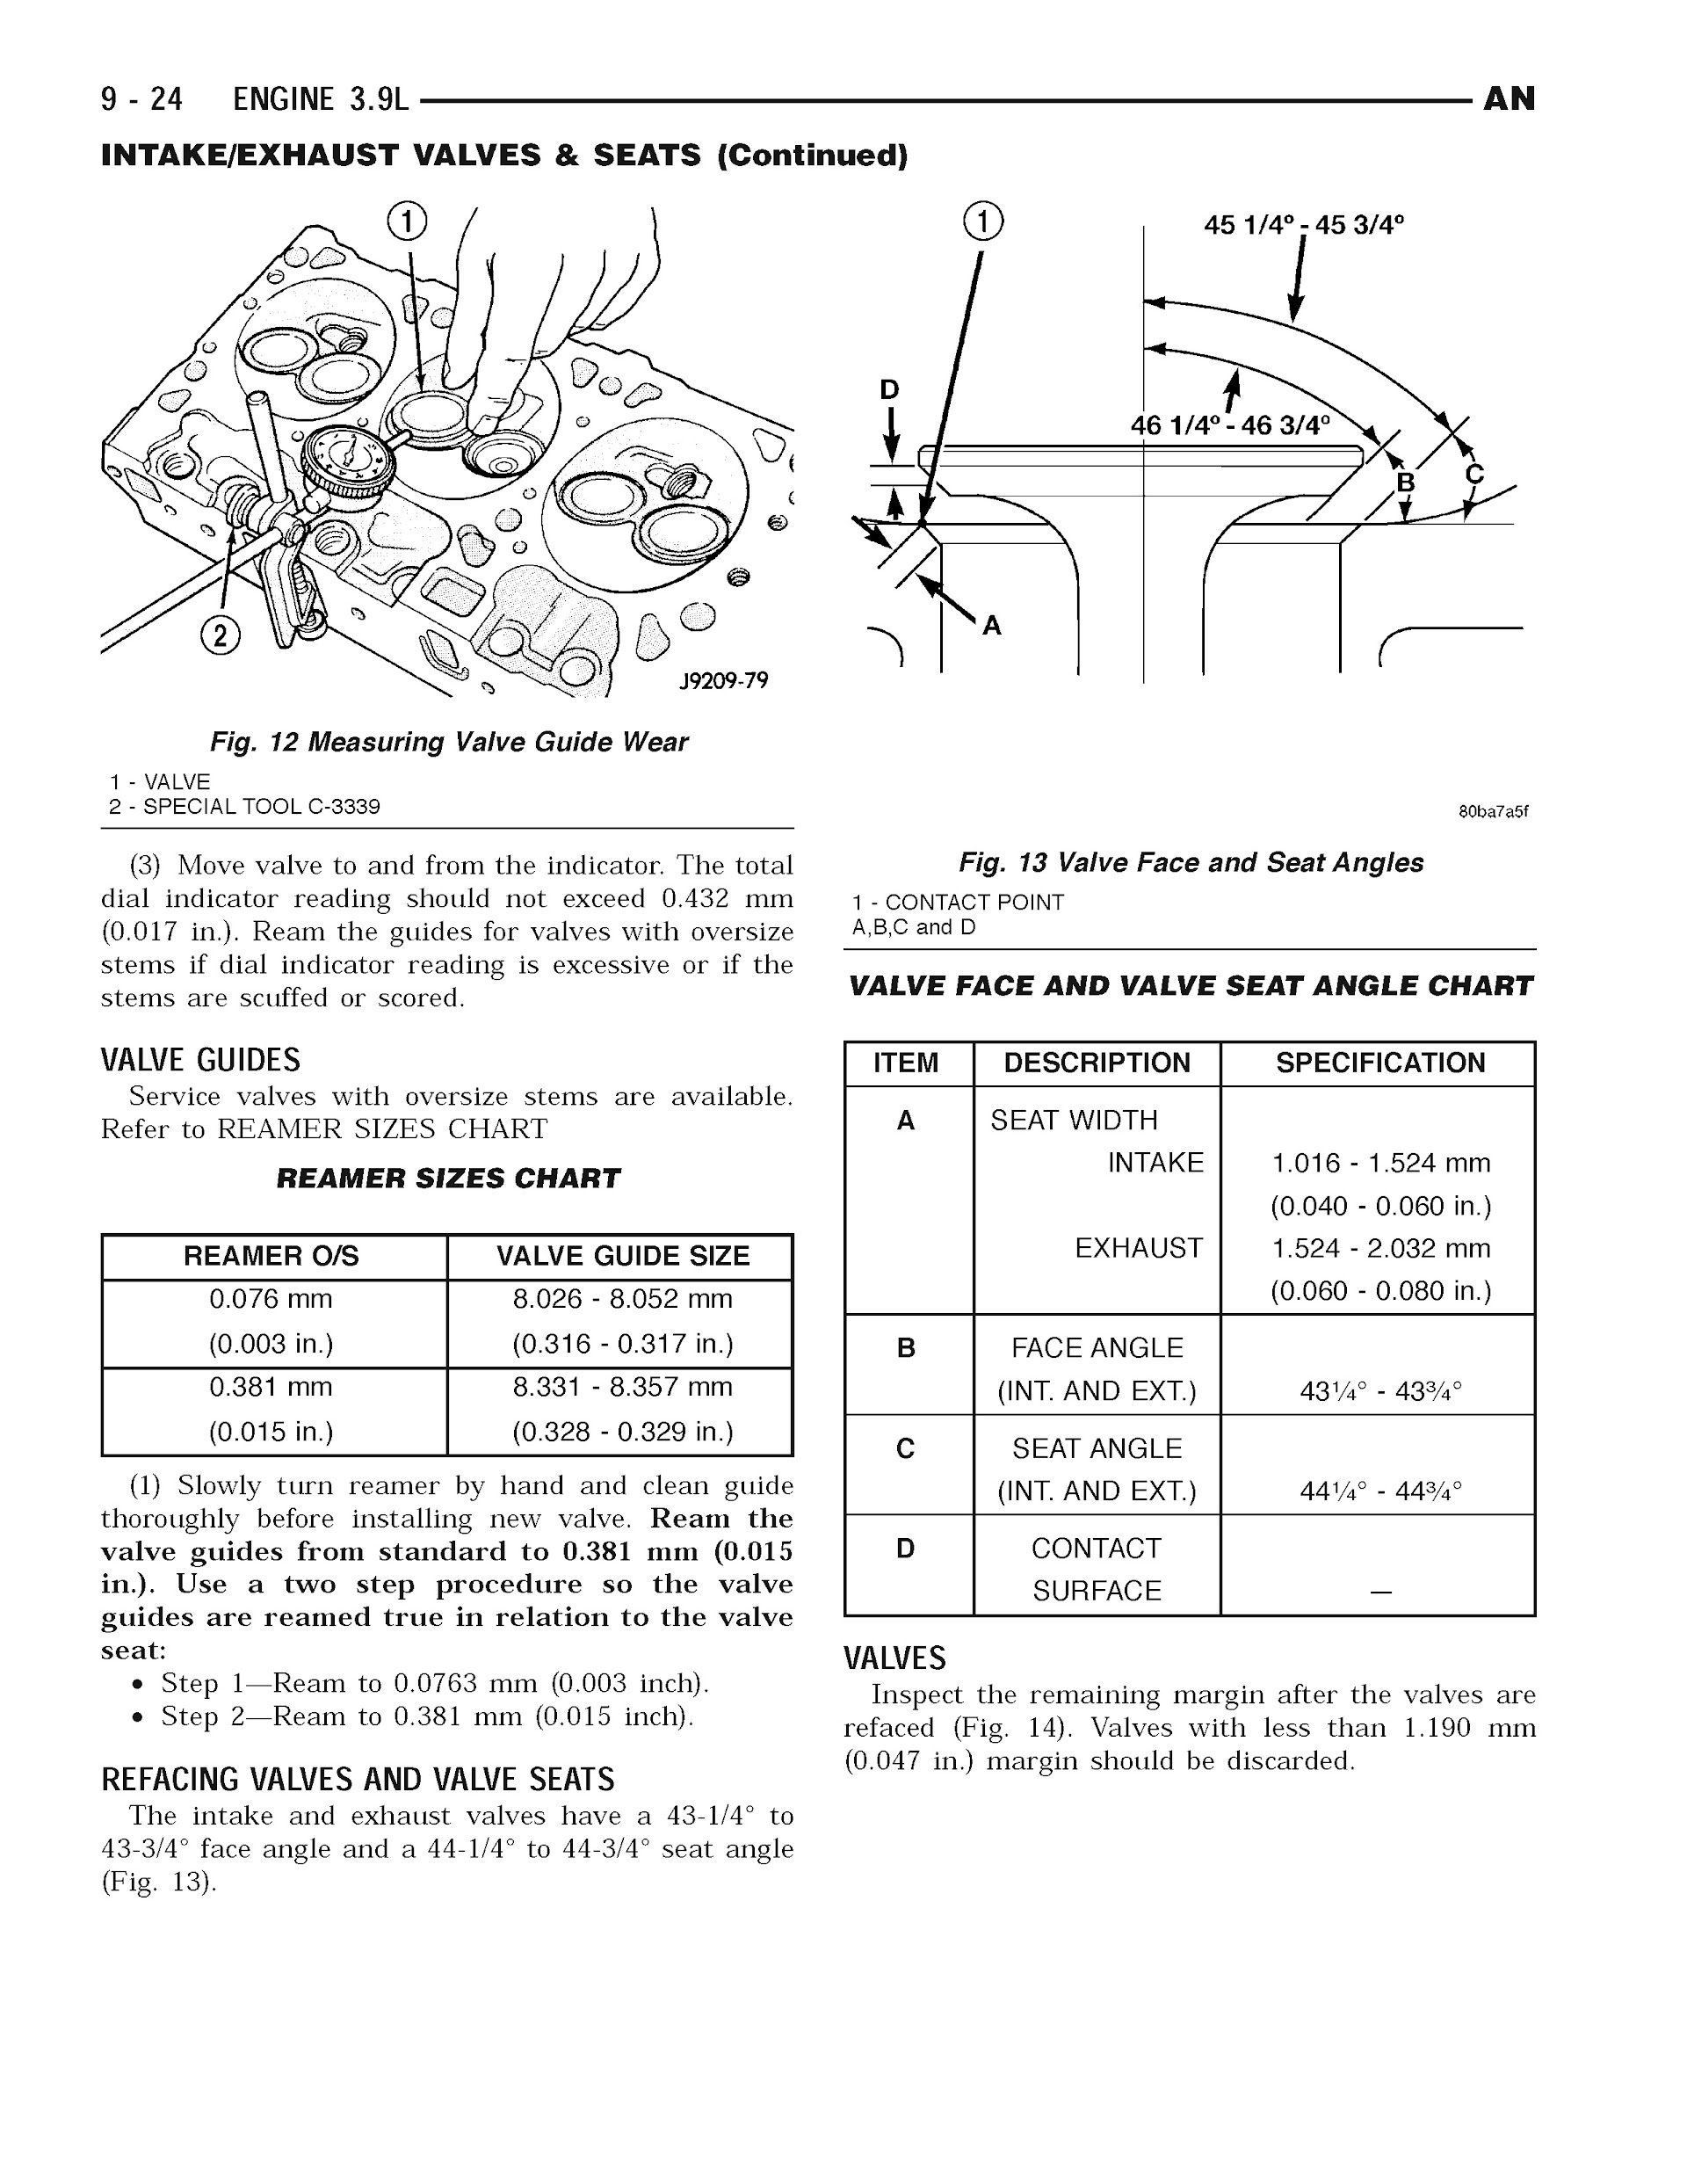 2004 Dodge Dakota Repair Manual, Engine 3.9L